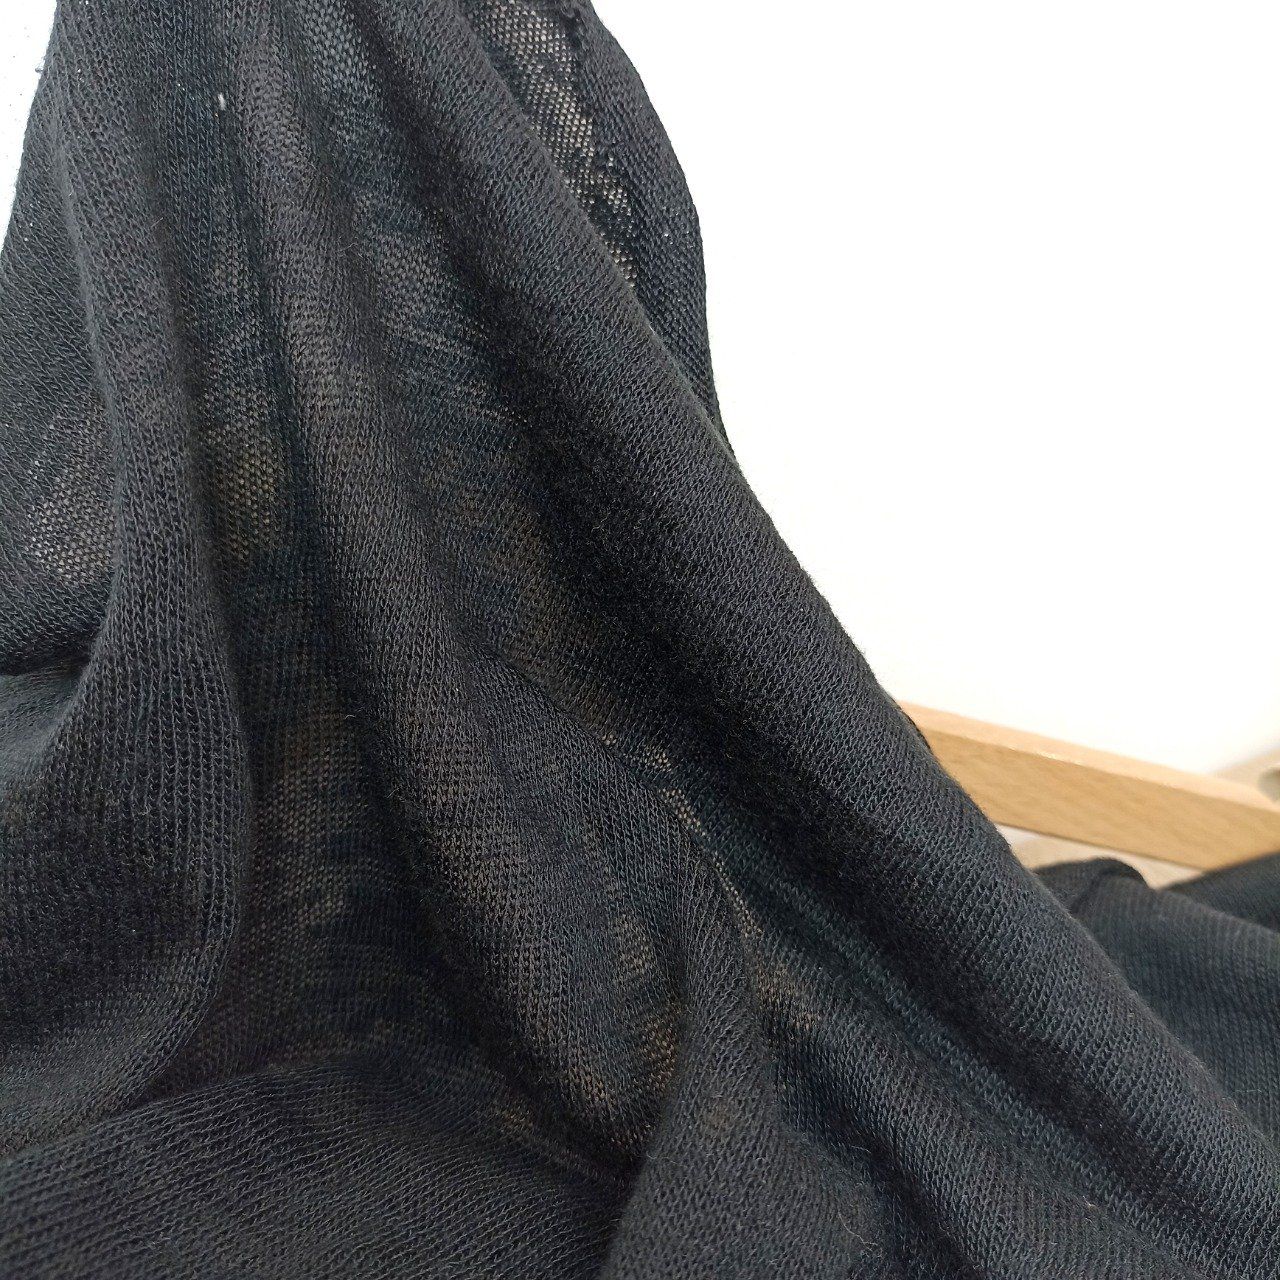 Tricot Léger  Noir - Coupon de 1,10 m 